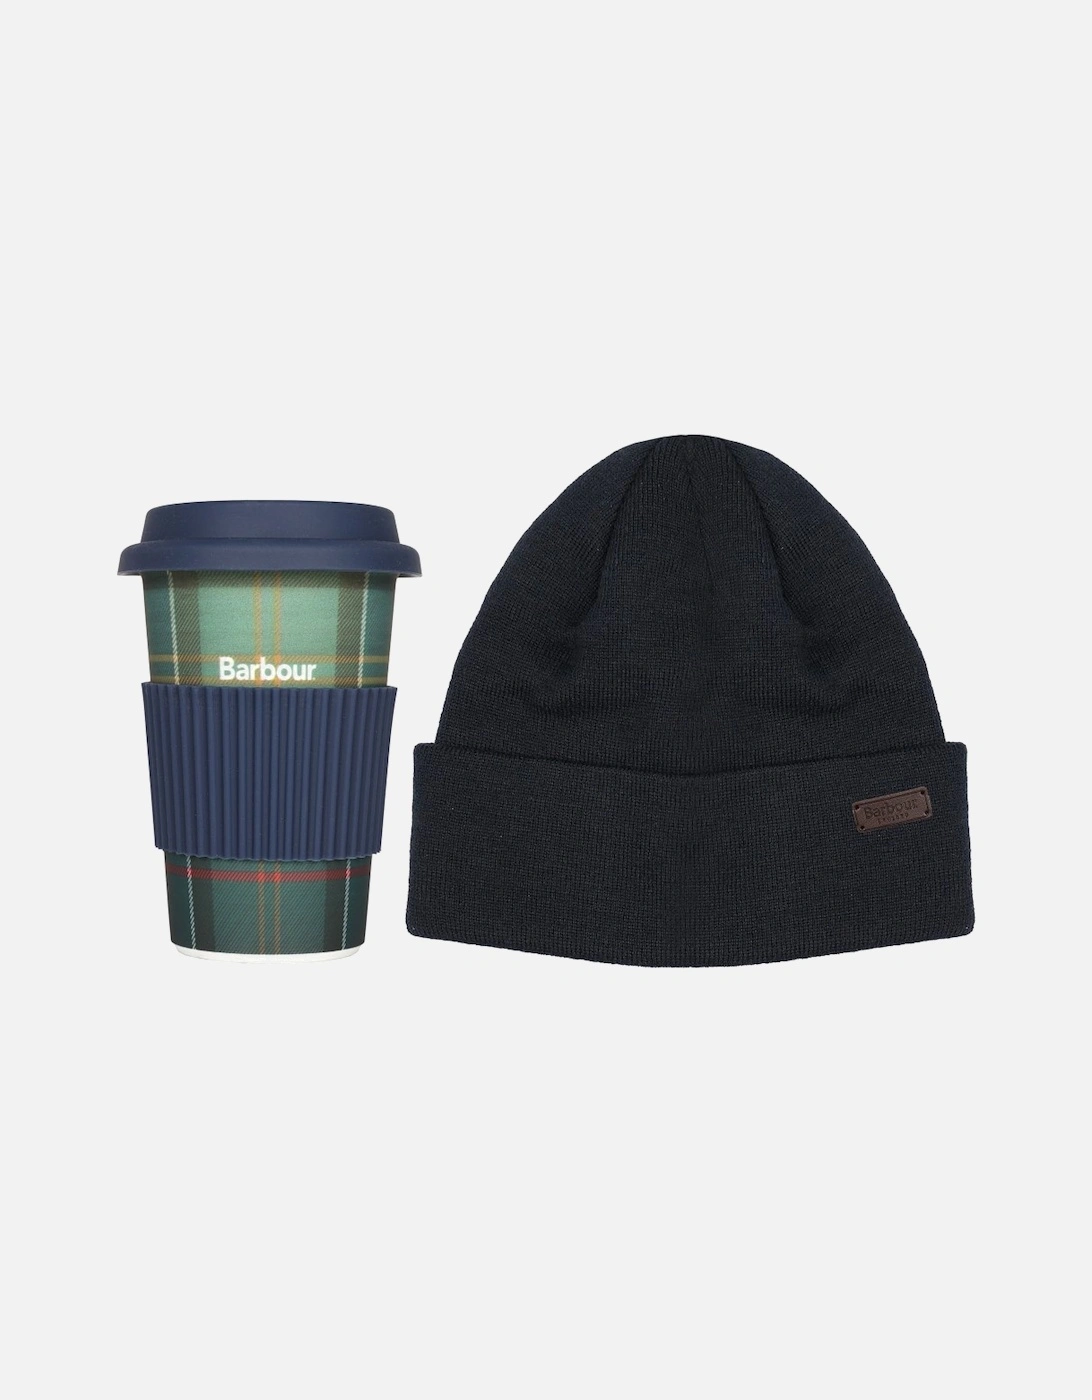 Travel Mug & Beanie Hat Men's Gift Set, 8 of 7